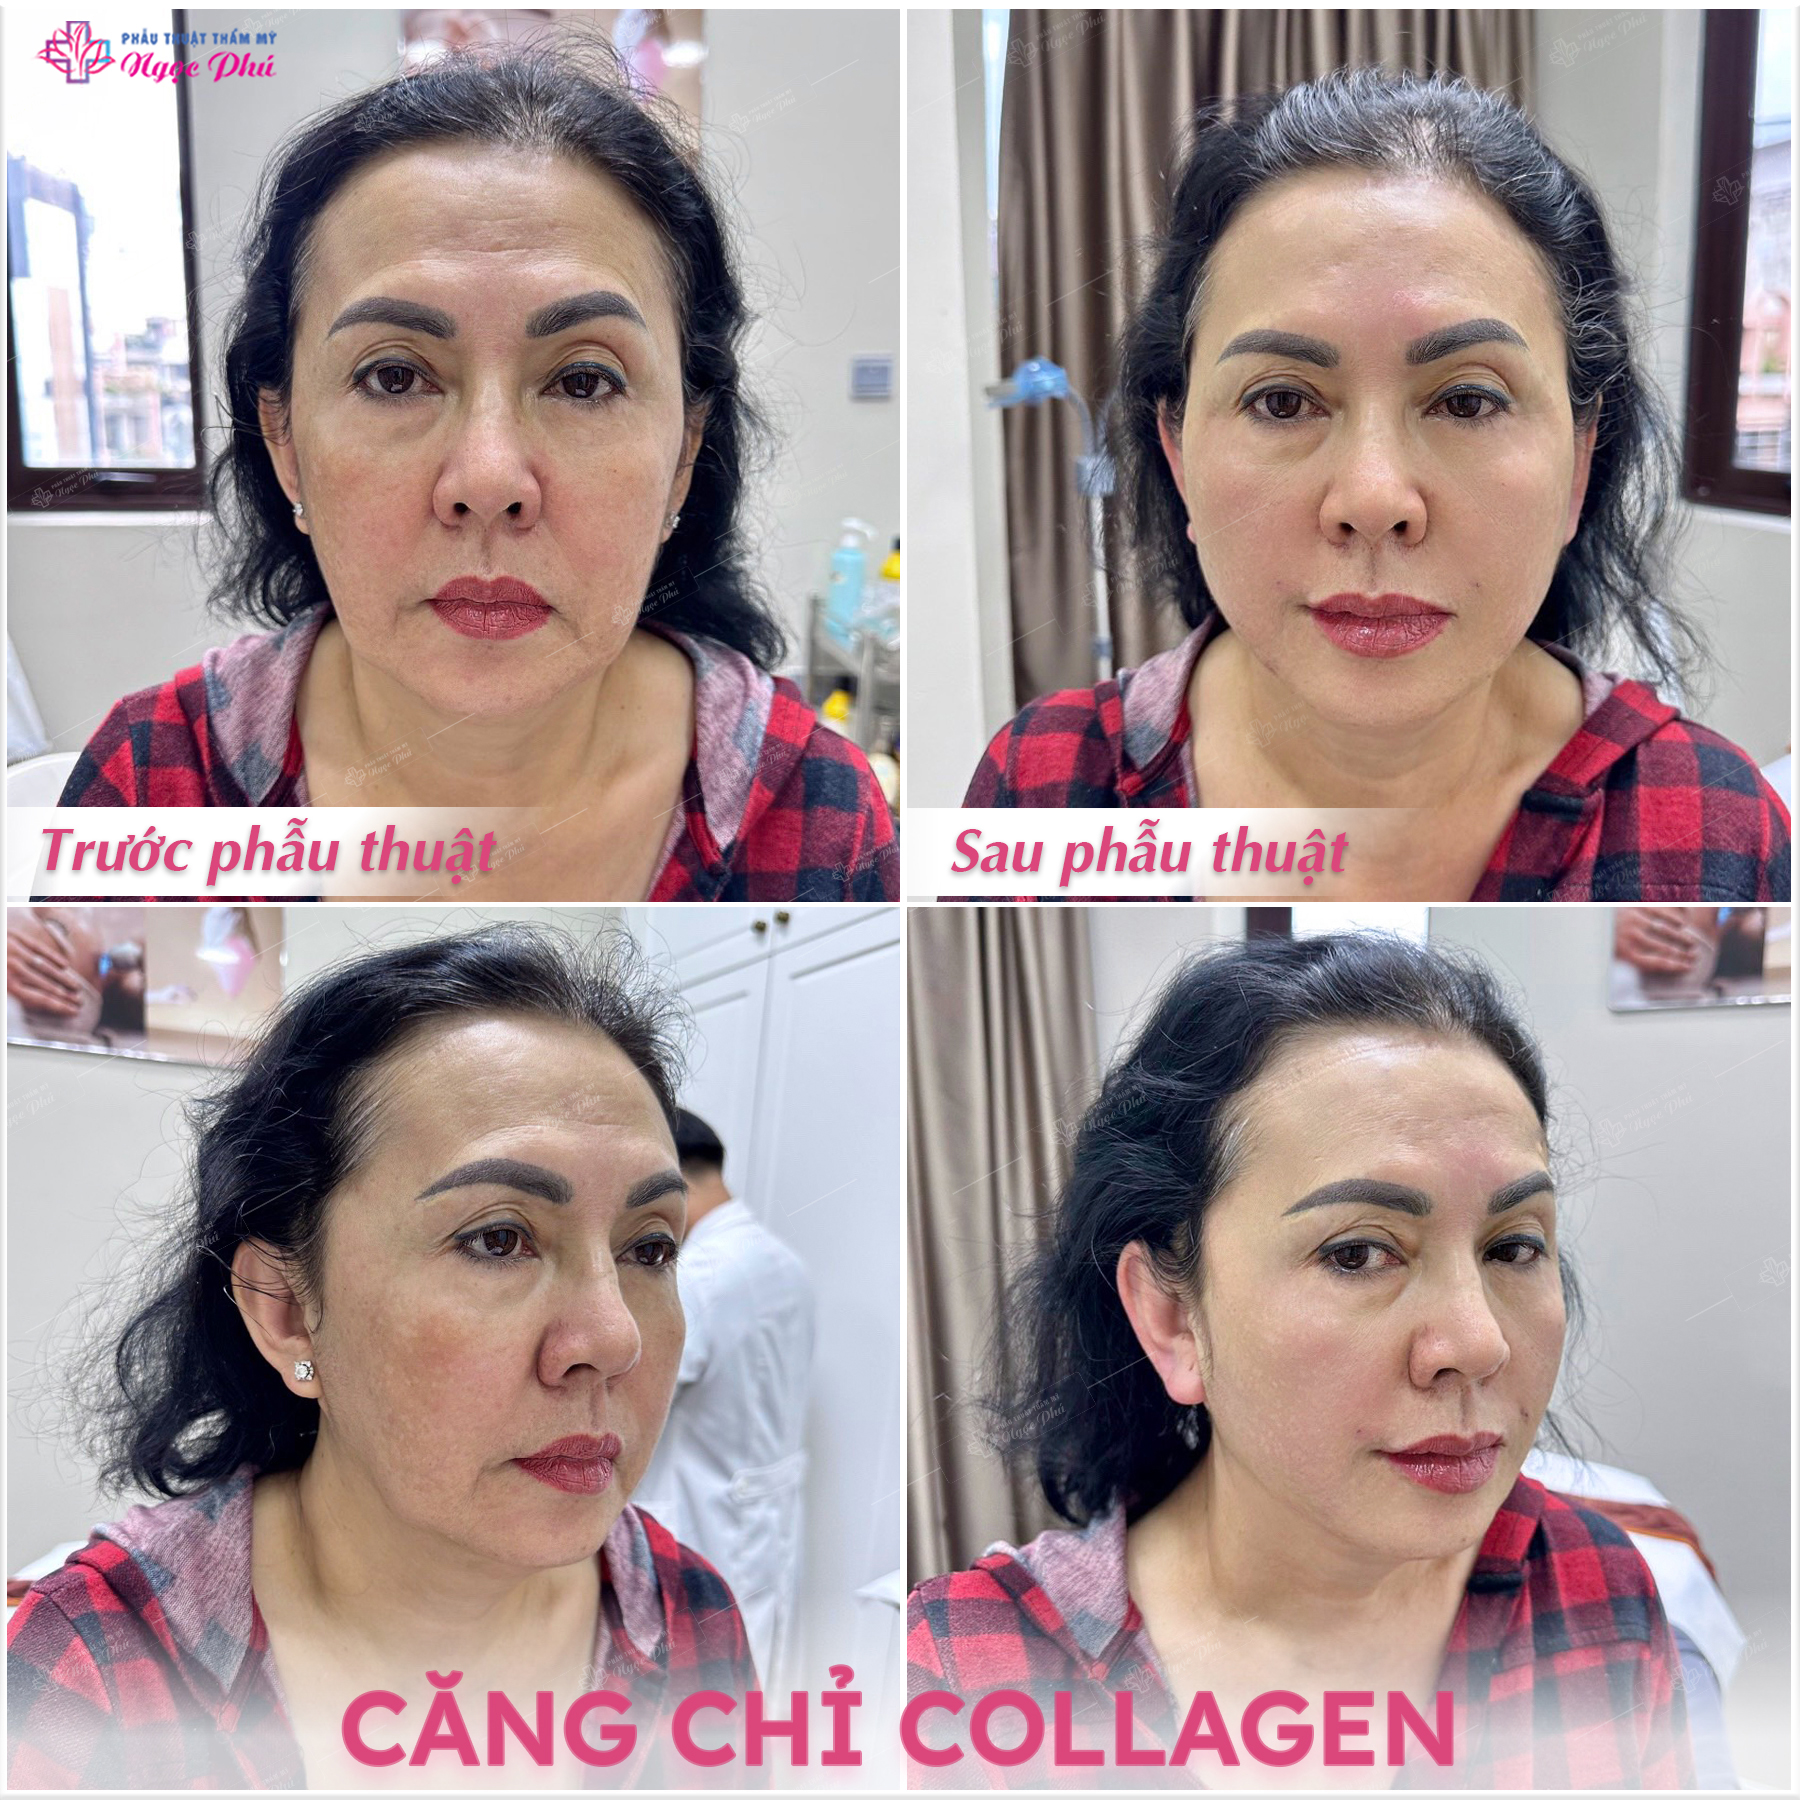 Căng chỉ collagen hay còn được gọi là cấy chỉ hoặc căng chỉ sinh học vào da, đây là một phương pháp căng da không cần can thiệp phẫu thuật trên khuôn mặt.